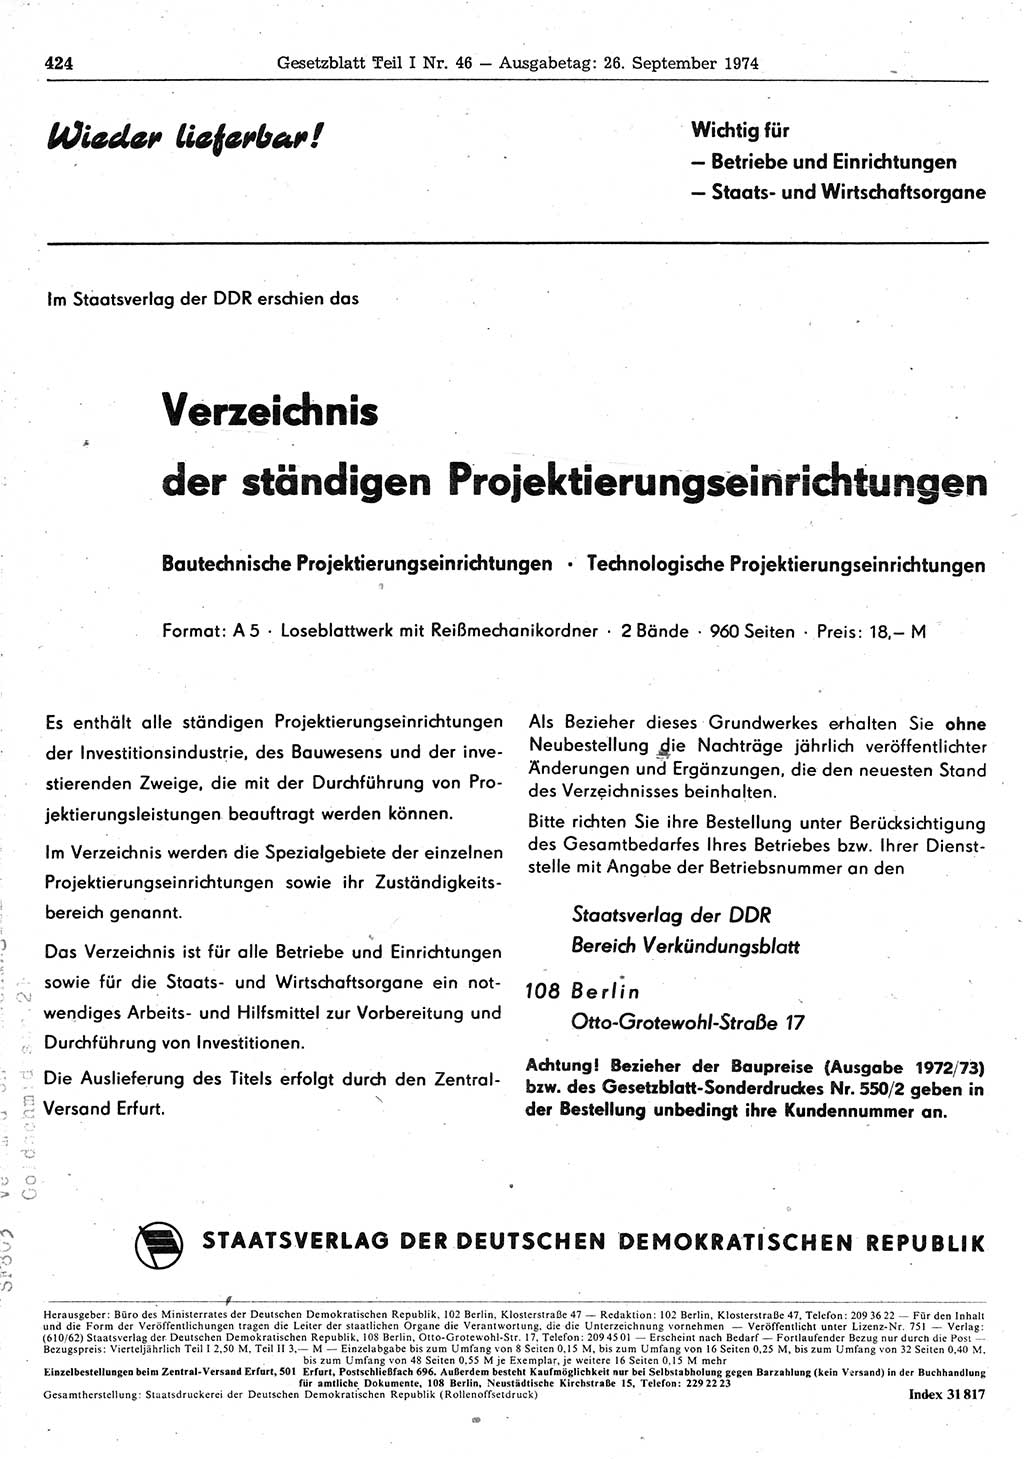 Gesetzblatt (GBl.) der Deutschen Demokratischen Republik (DDR) Teil Ⅰ 1974, Seite 424 (GBl. DDR Ⅰ 1974, S. 424)